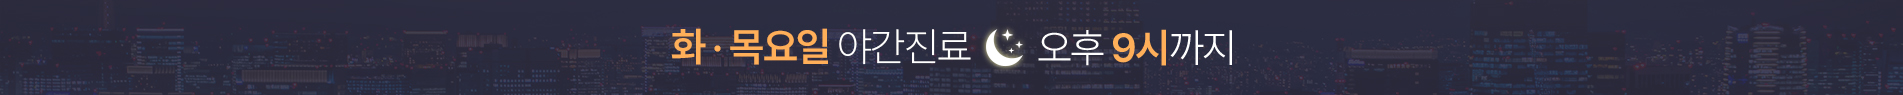 서울굿모닝치과 목요일 야간진료안내